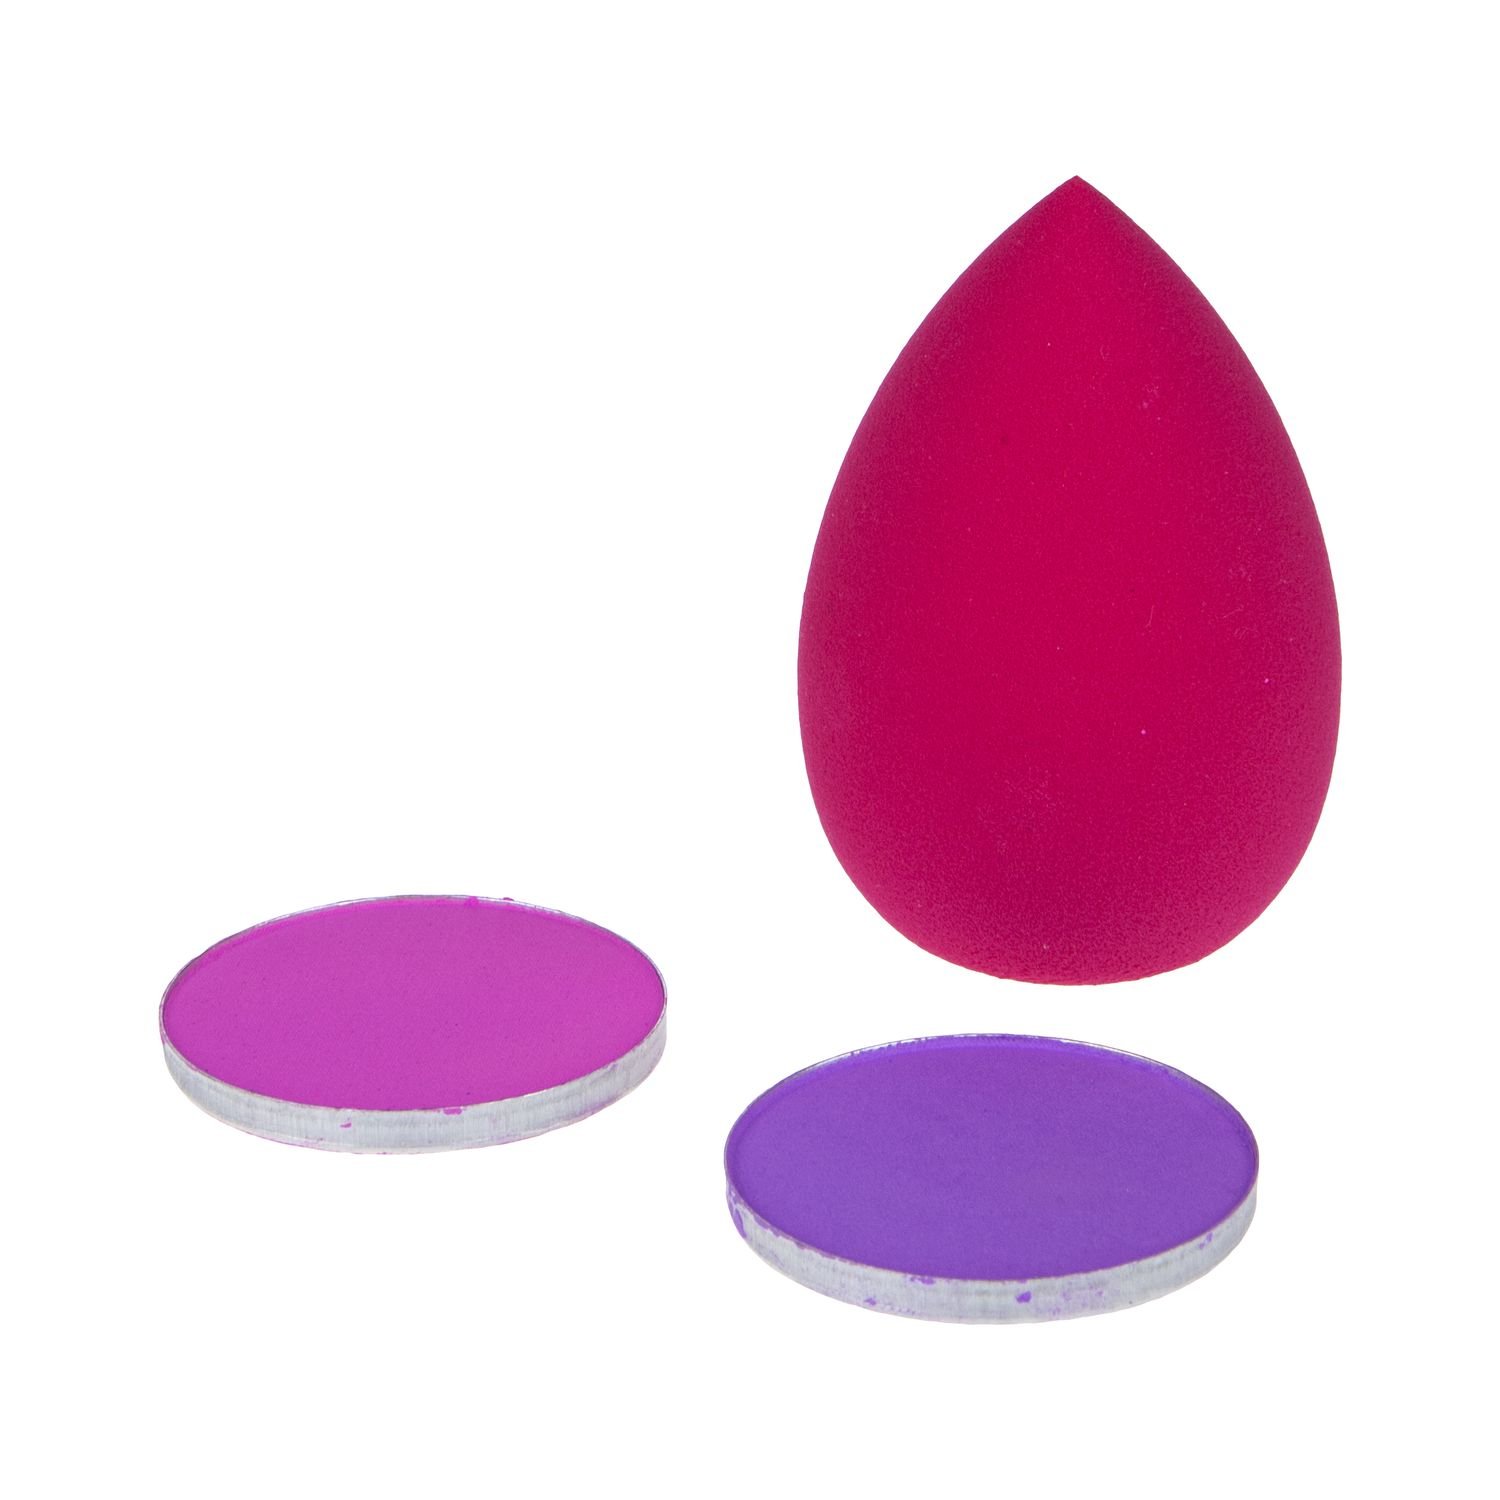 Lukky набор с пудрой для волос и каплевидным спонжем, 2 цвета: розовый и сиреневый  